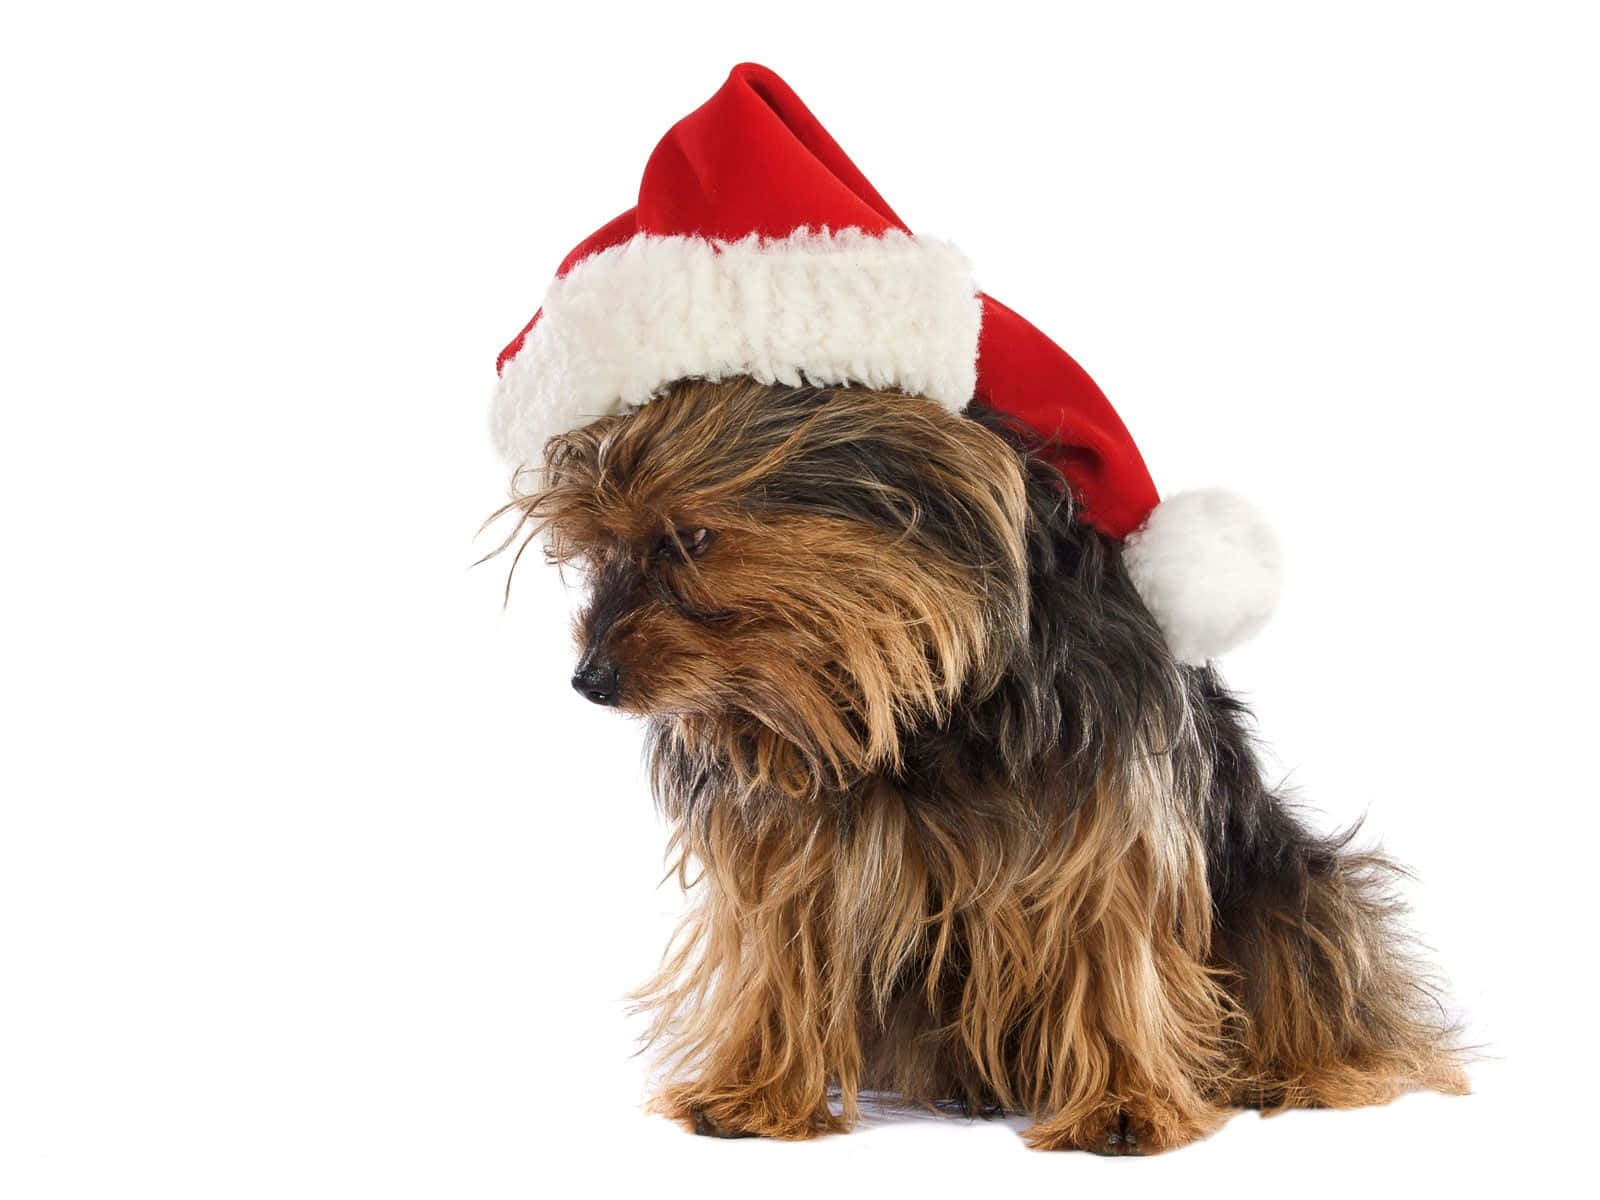 Imágenesde Perros Yorkshire Terrier Con Gorrito De Santa Para Navidad.